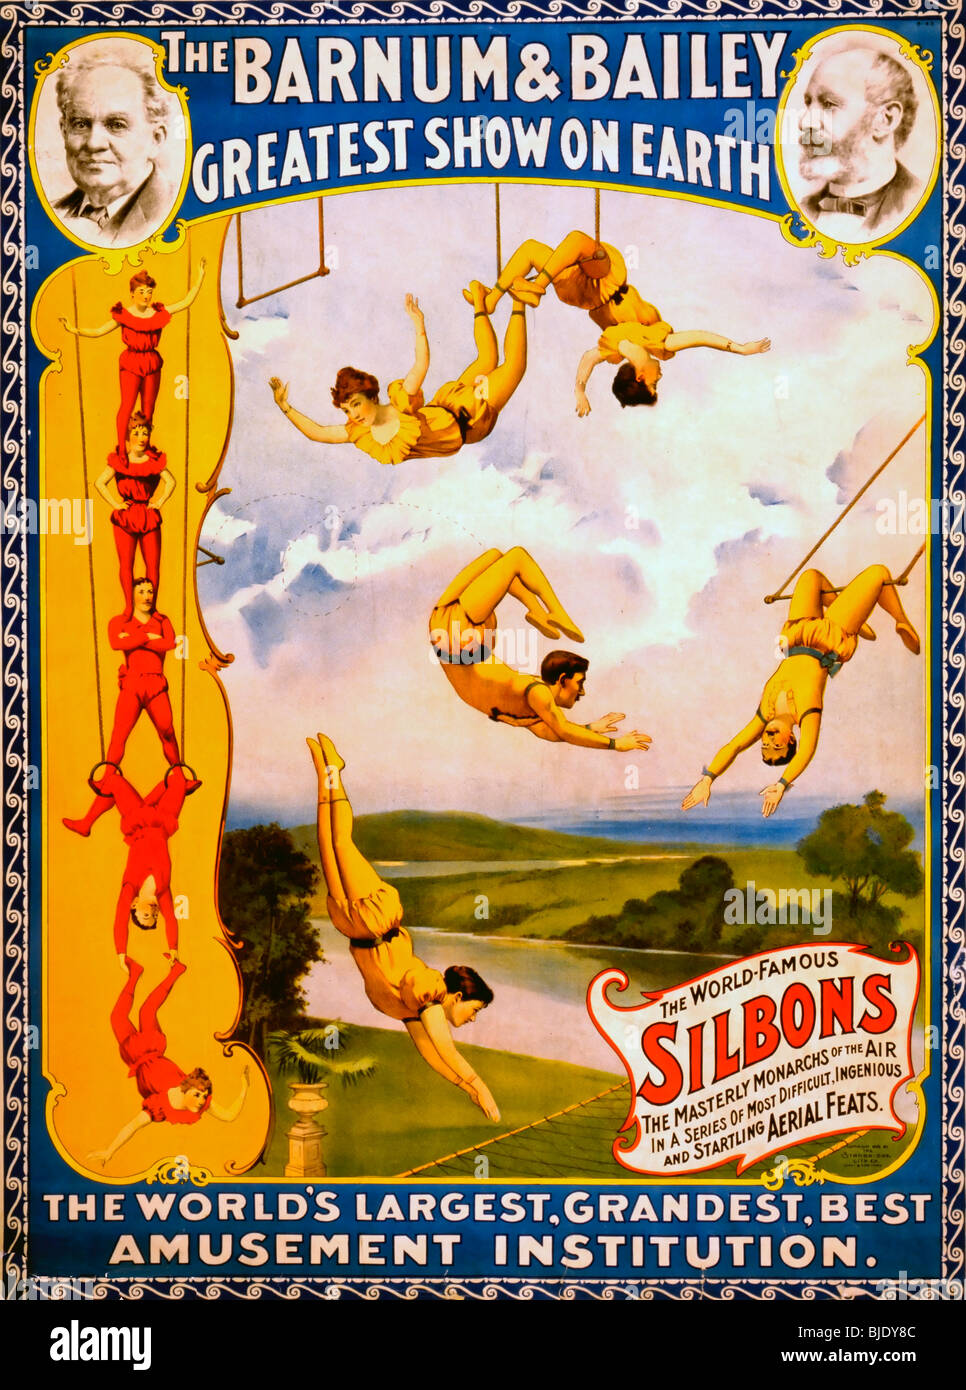 El Barnum & Bailey mayor espectáculo de la tierra más grande del mundo, el más grandioso, institución mejor entretenimiento - 1896 Cartel de circo Foto de stock